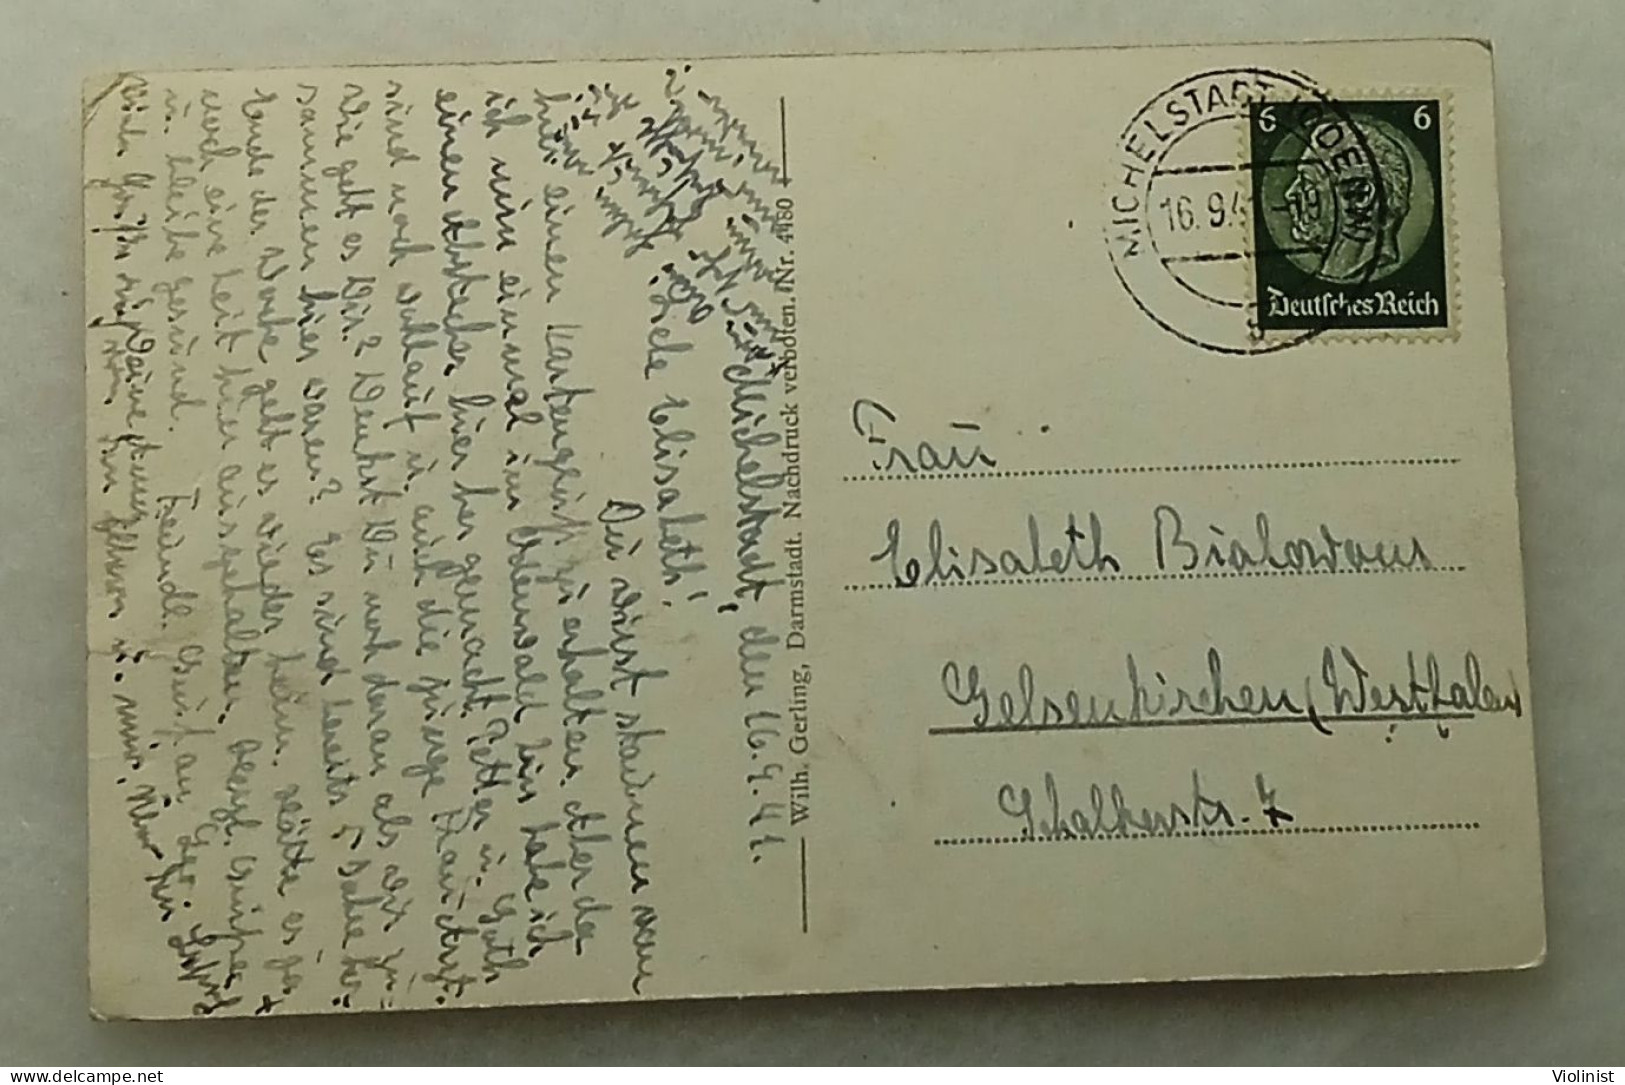 Germany-Luftkurort Michelstadt i.Odenw.-Marktplatz mit Rathaus-postcard sent in 1941.